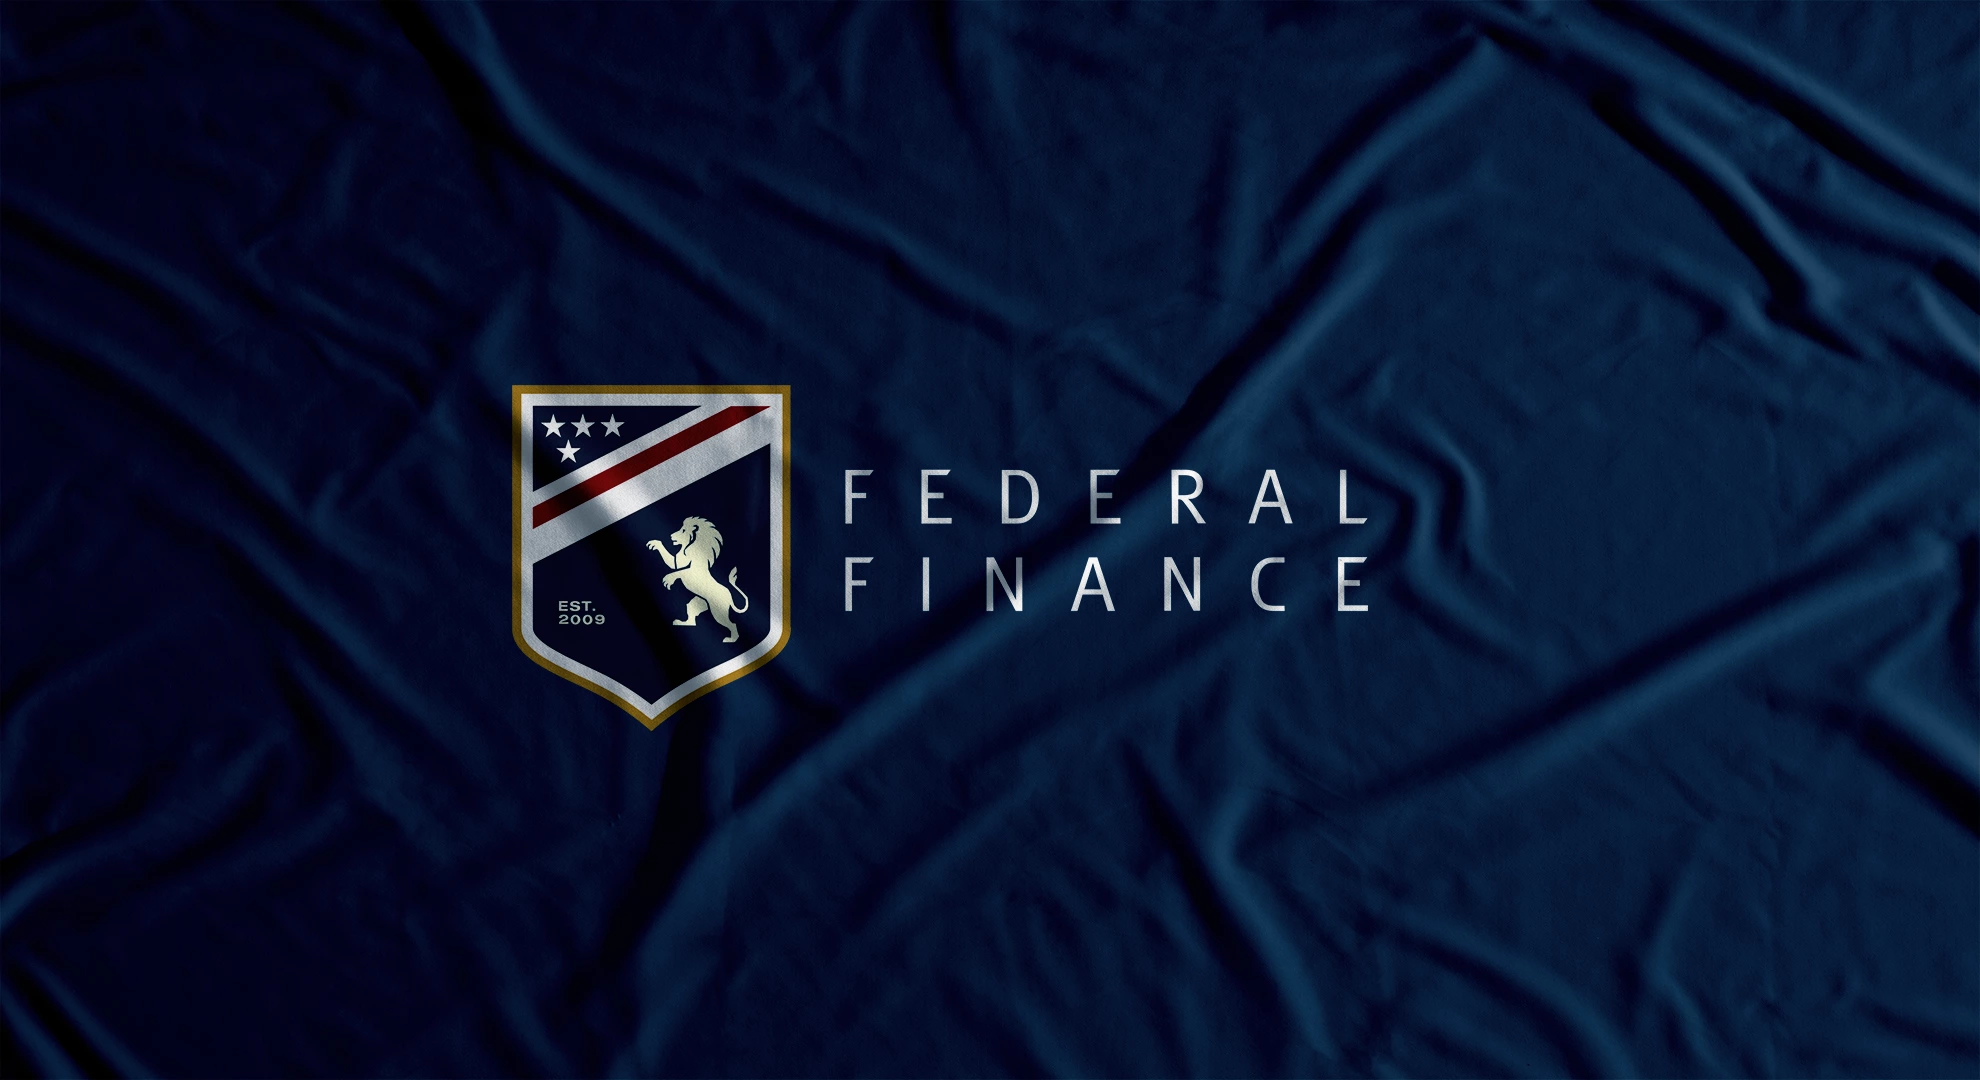 federal finance logo design on flag